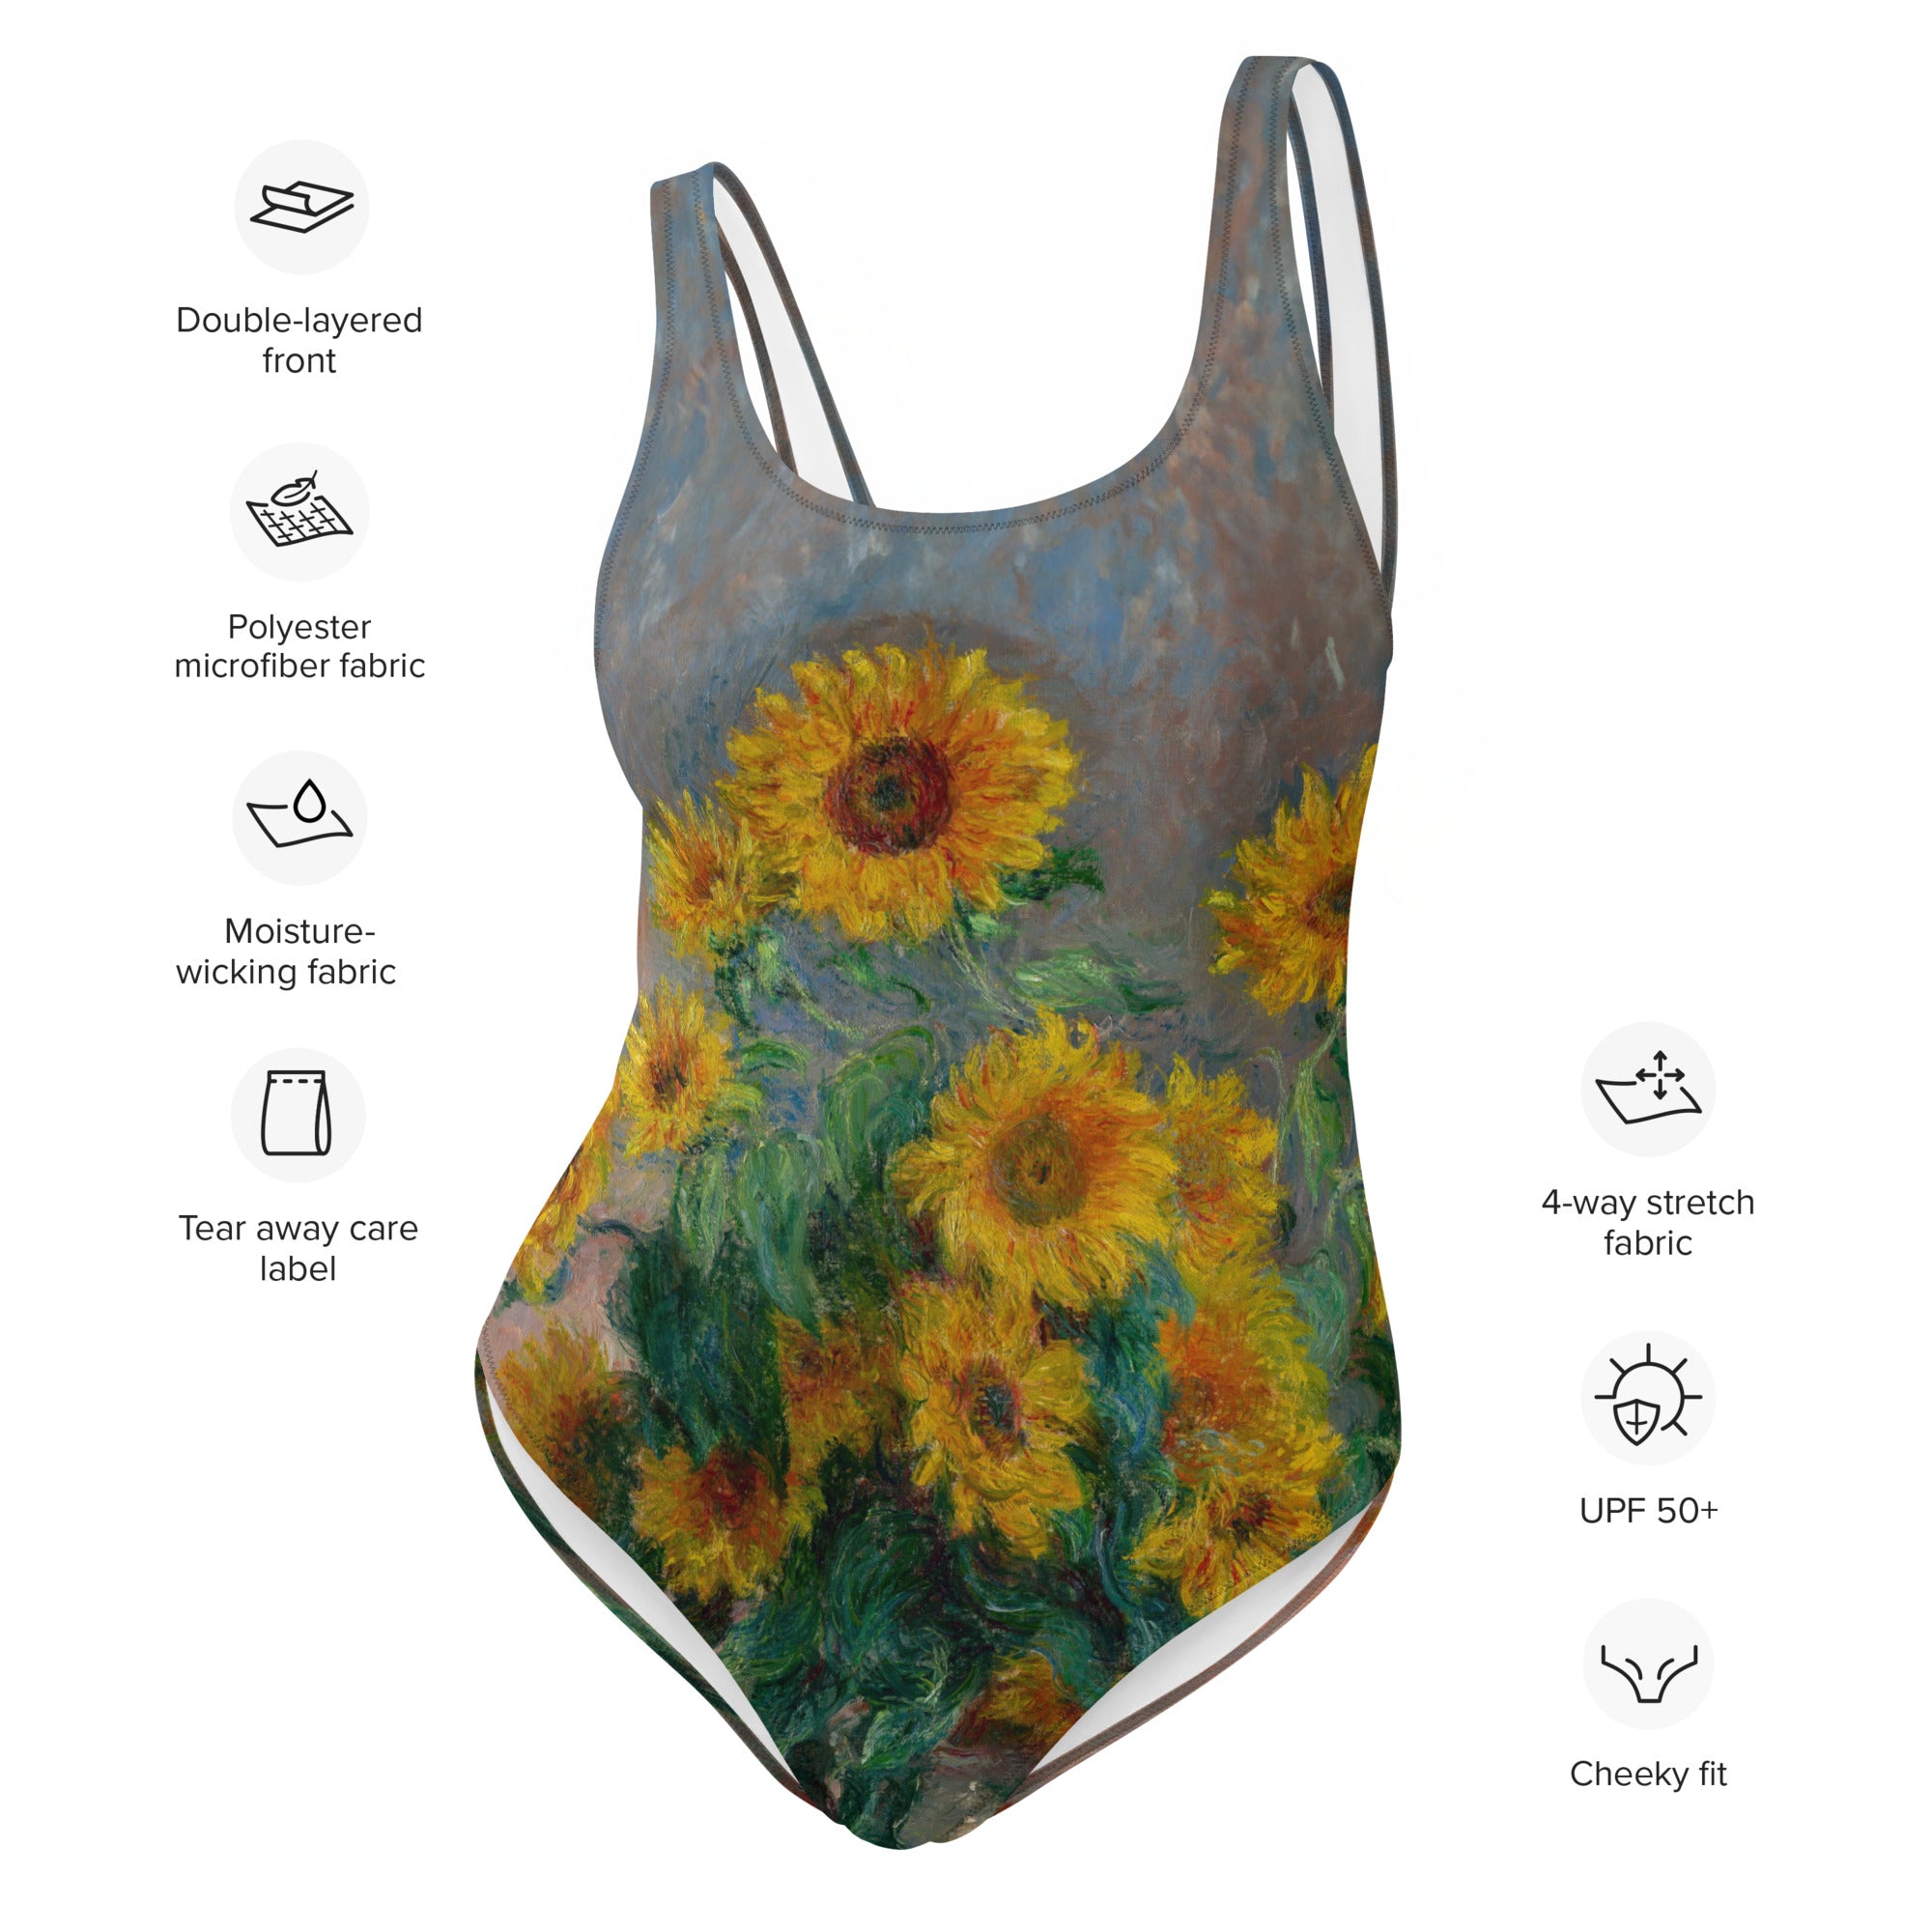 Claude Monet 'Bouquet of Sunflowers' Famous Painting Swimsuit | Premium Art One Piece Swimsuit